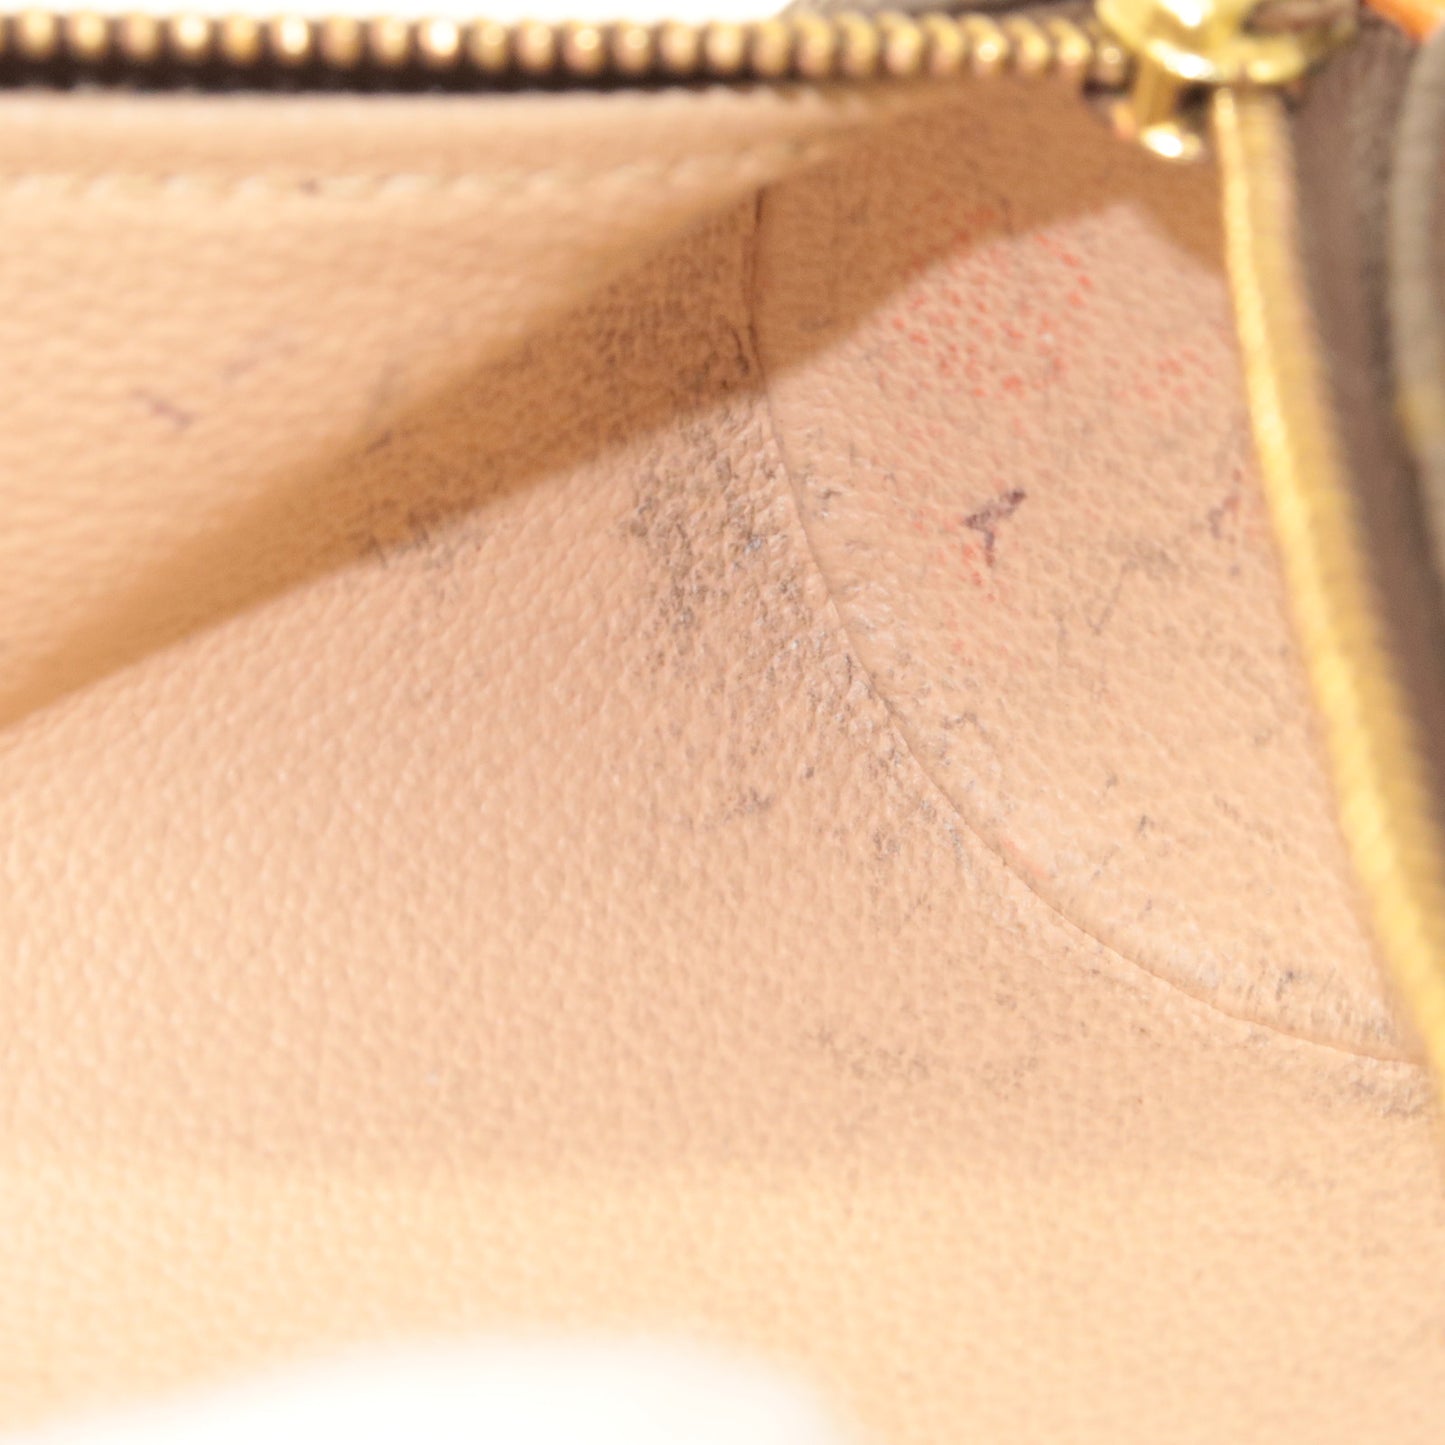 Authentic Louis Vuitton Monogram Trousse Ronde Pen Case Pouch M47630 LV  2805G